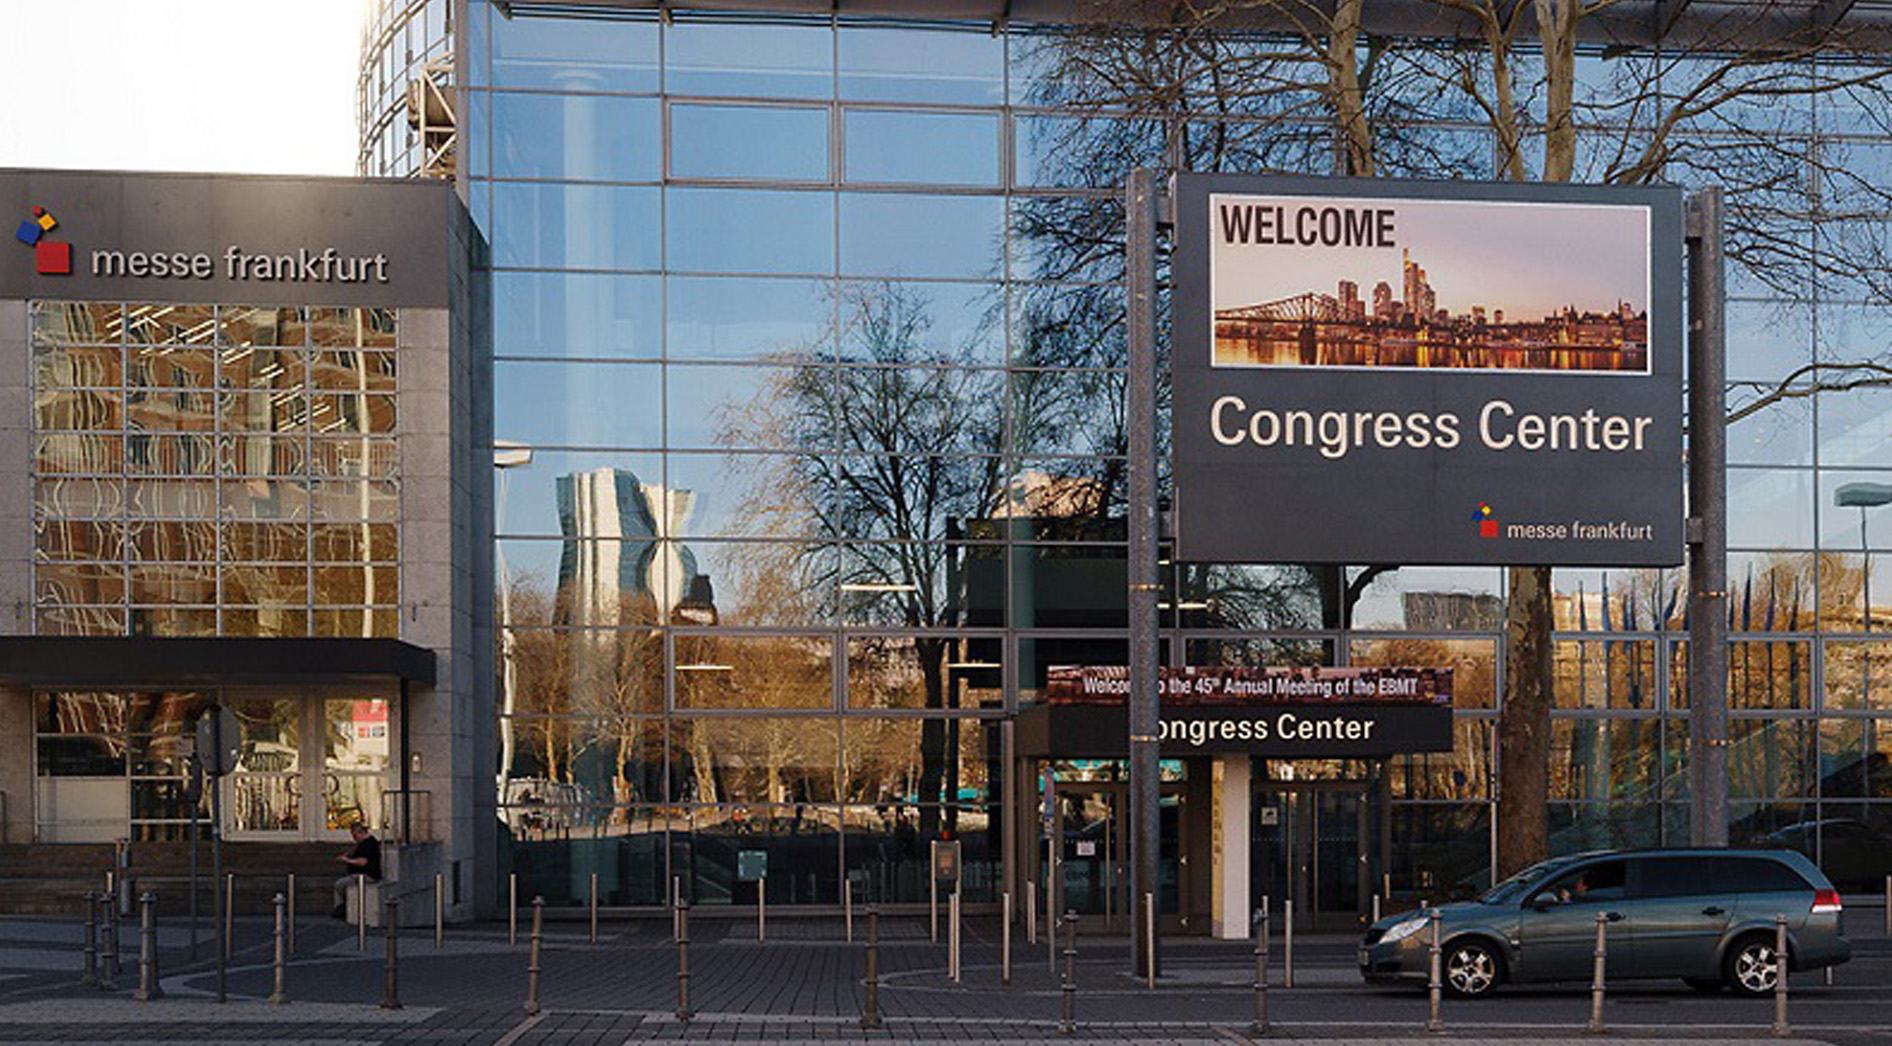 Branding Congress Center